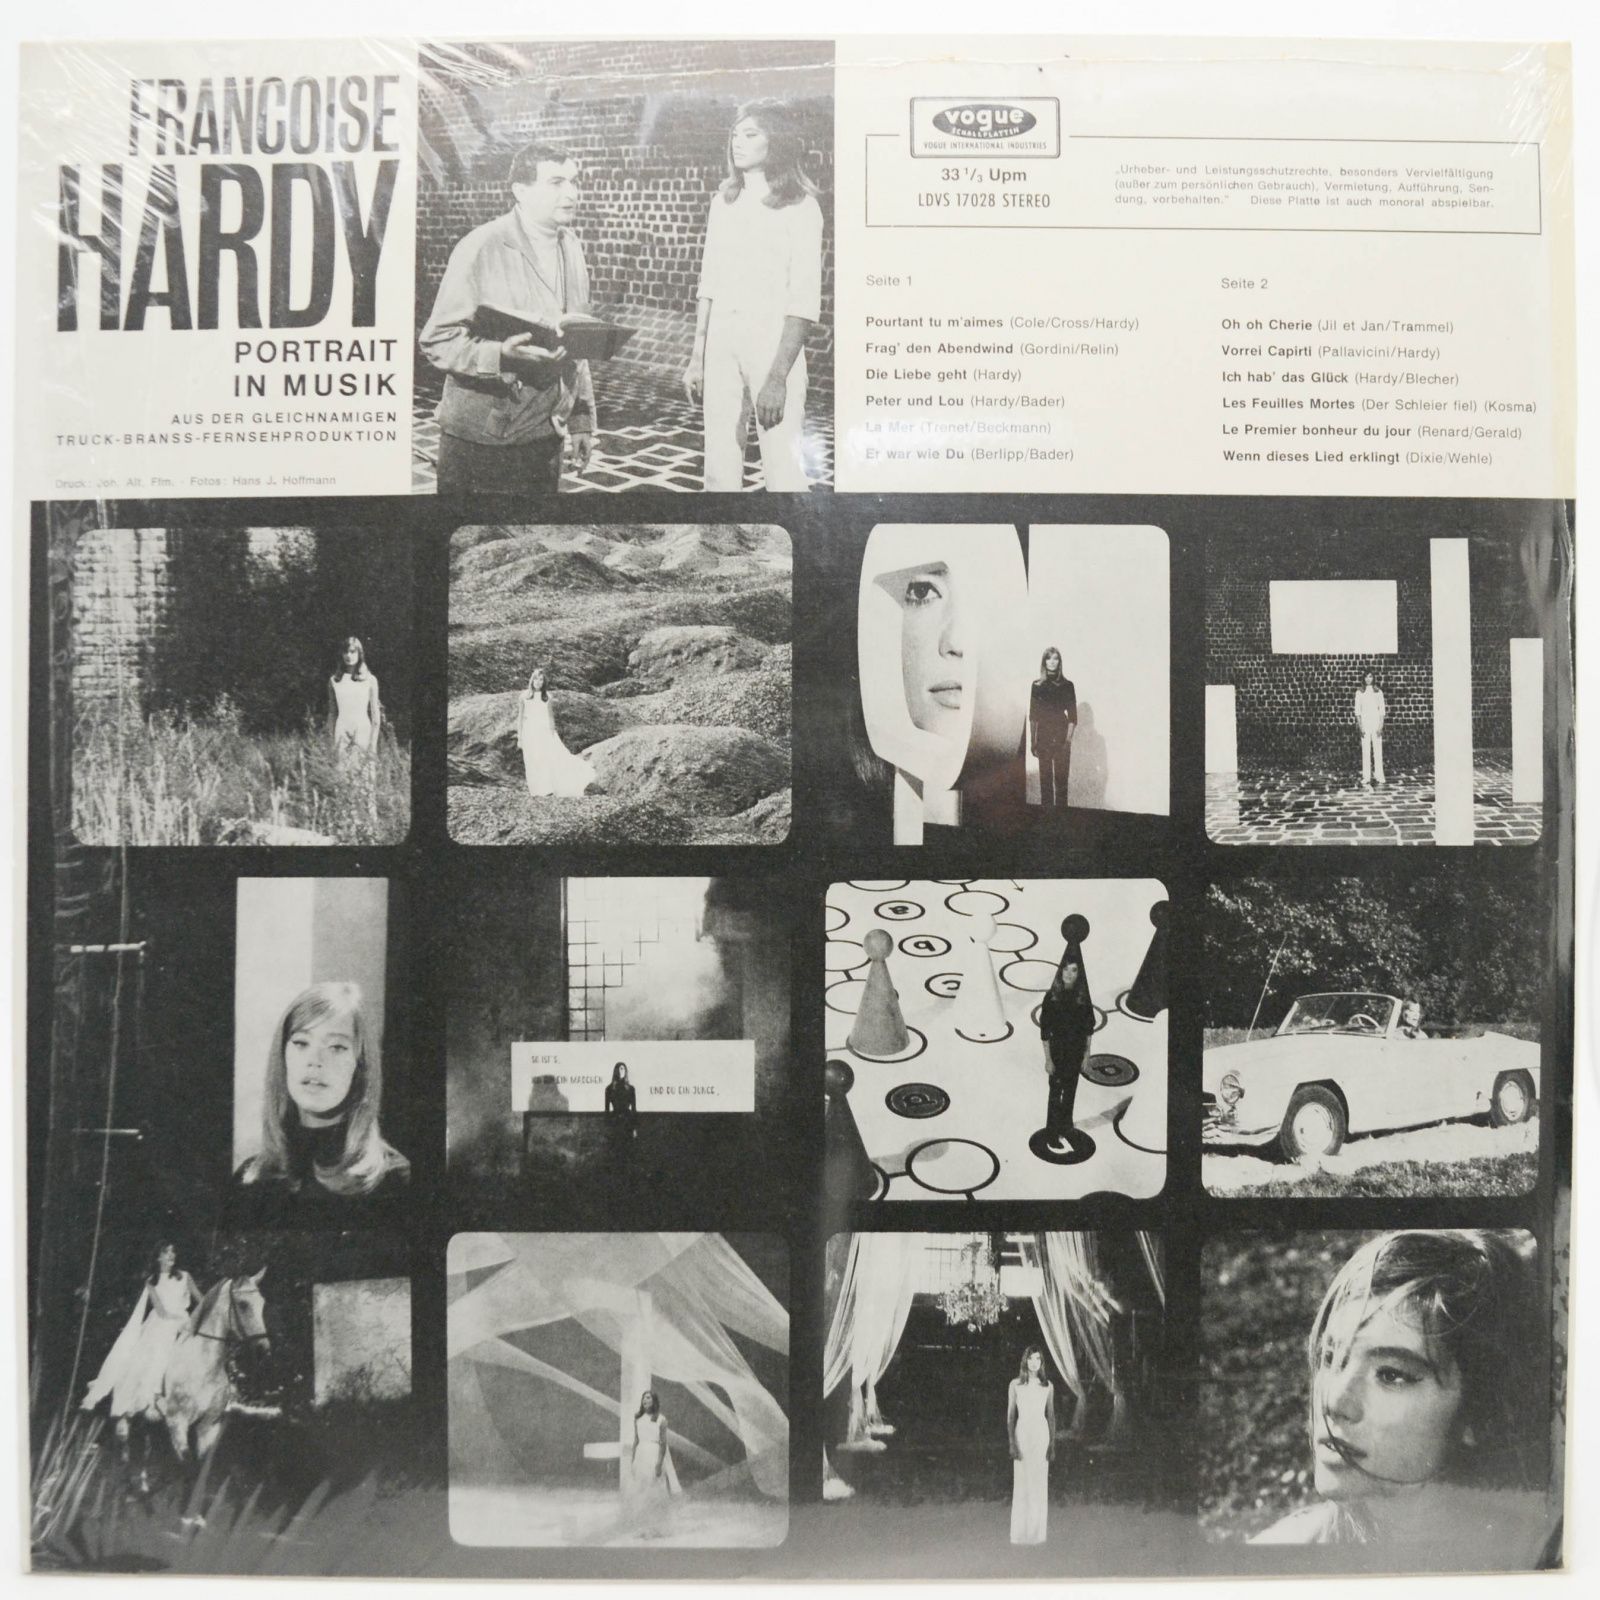 Françoise Hardy — Portrait In Musik, 1965